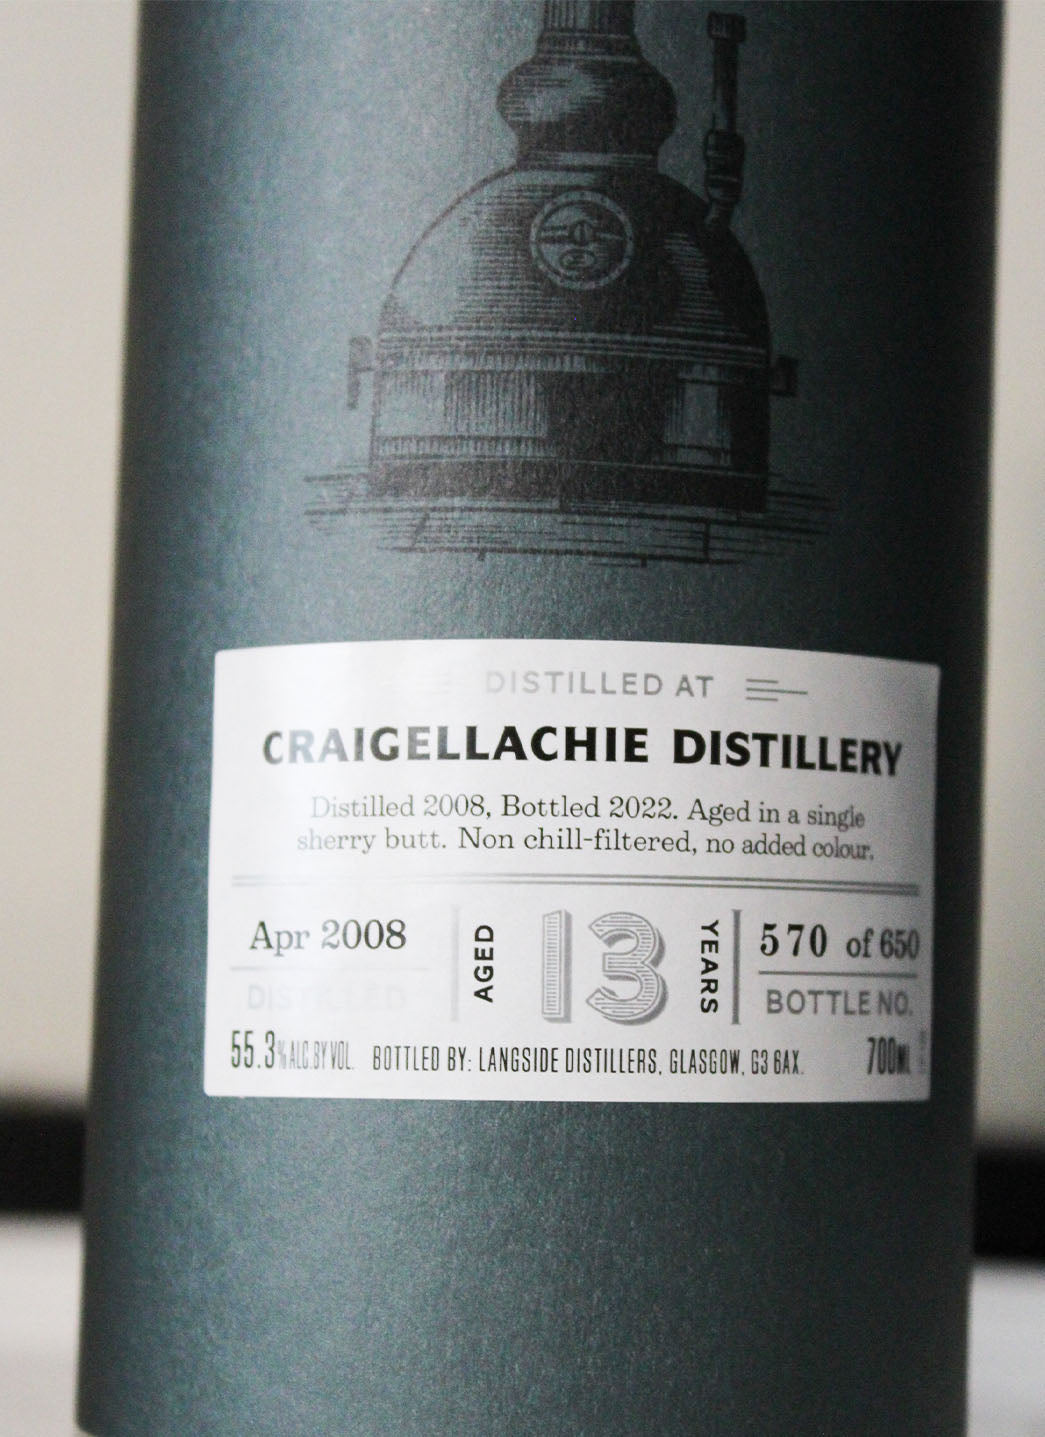 Distiller's Art Craigellachie 13 Year Single Malt Scotch